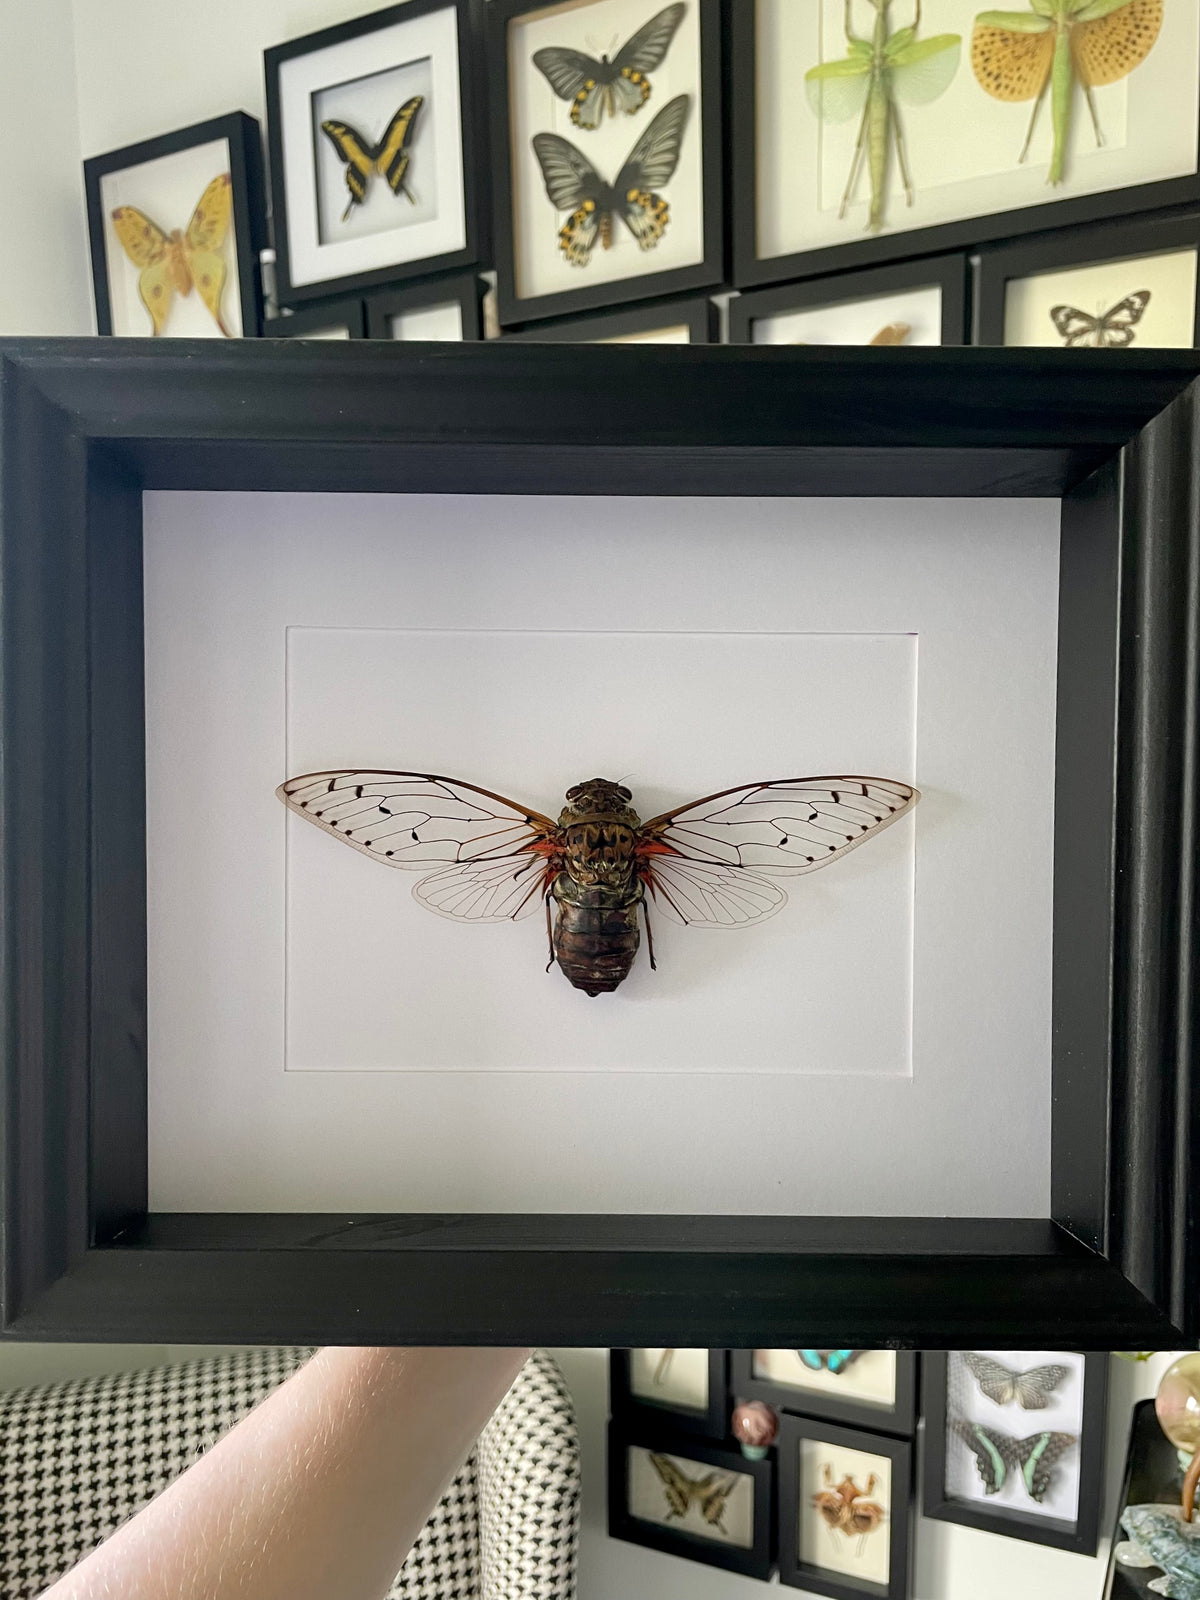 XL Cicada / Pomponia Intermedia in a frame